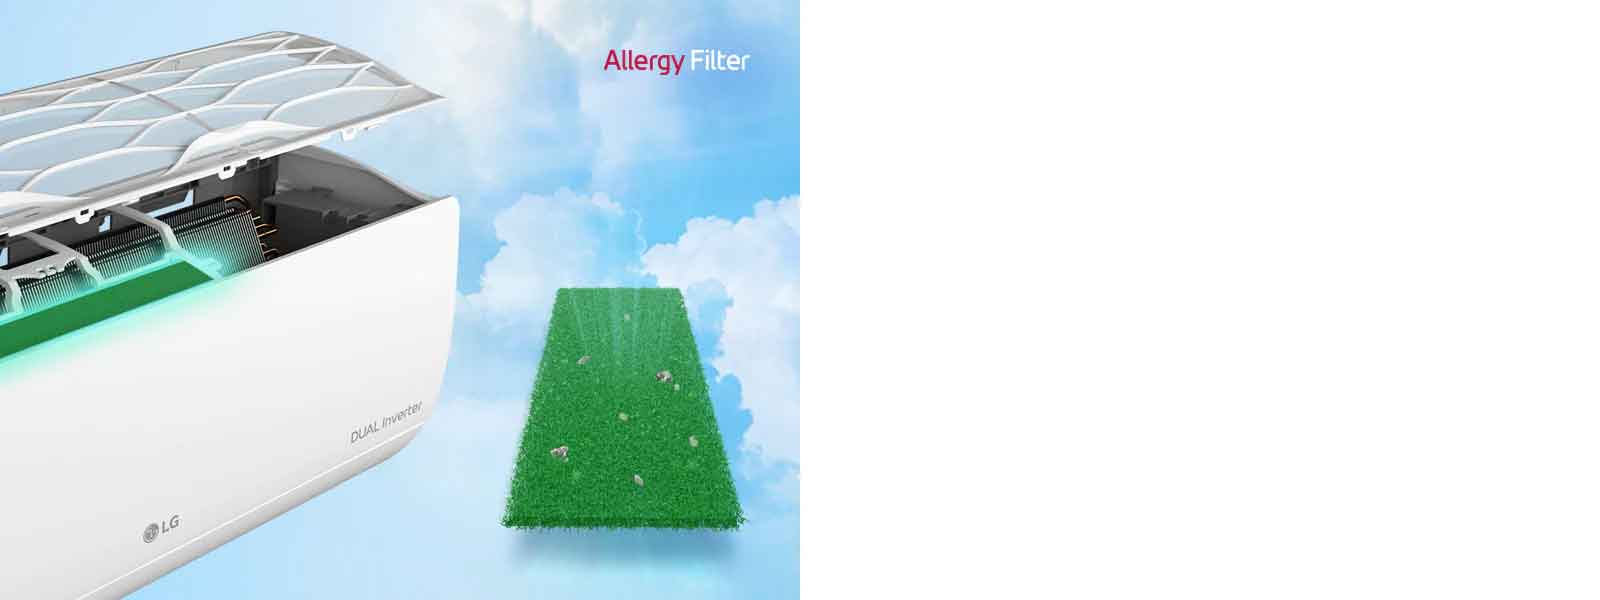 Kąt boczny klimatyzatora jest pokazany z filtrami unoszącymi się powyżej, aby pokazać filtr alergiczny zainstalowany wewnątrz. Obok maszyny znajduje się cały zielony filtr antyalergiczny, w który wpadły roztocza. Logo Filtra Alergii znajduje się w prawym górnym rogu.